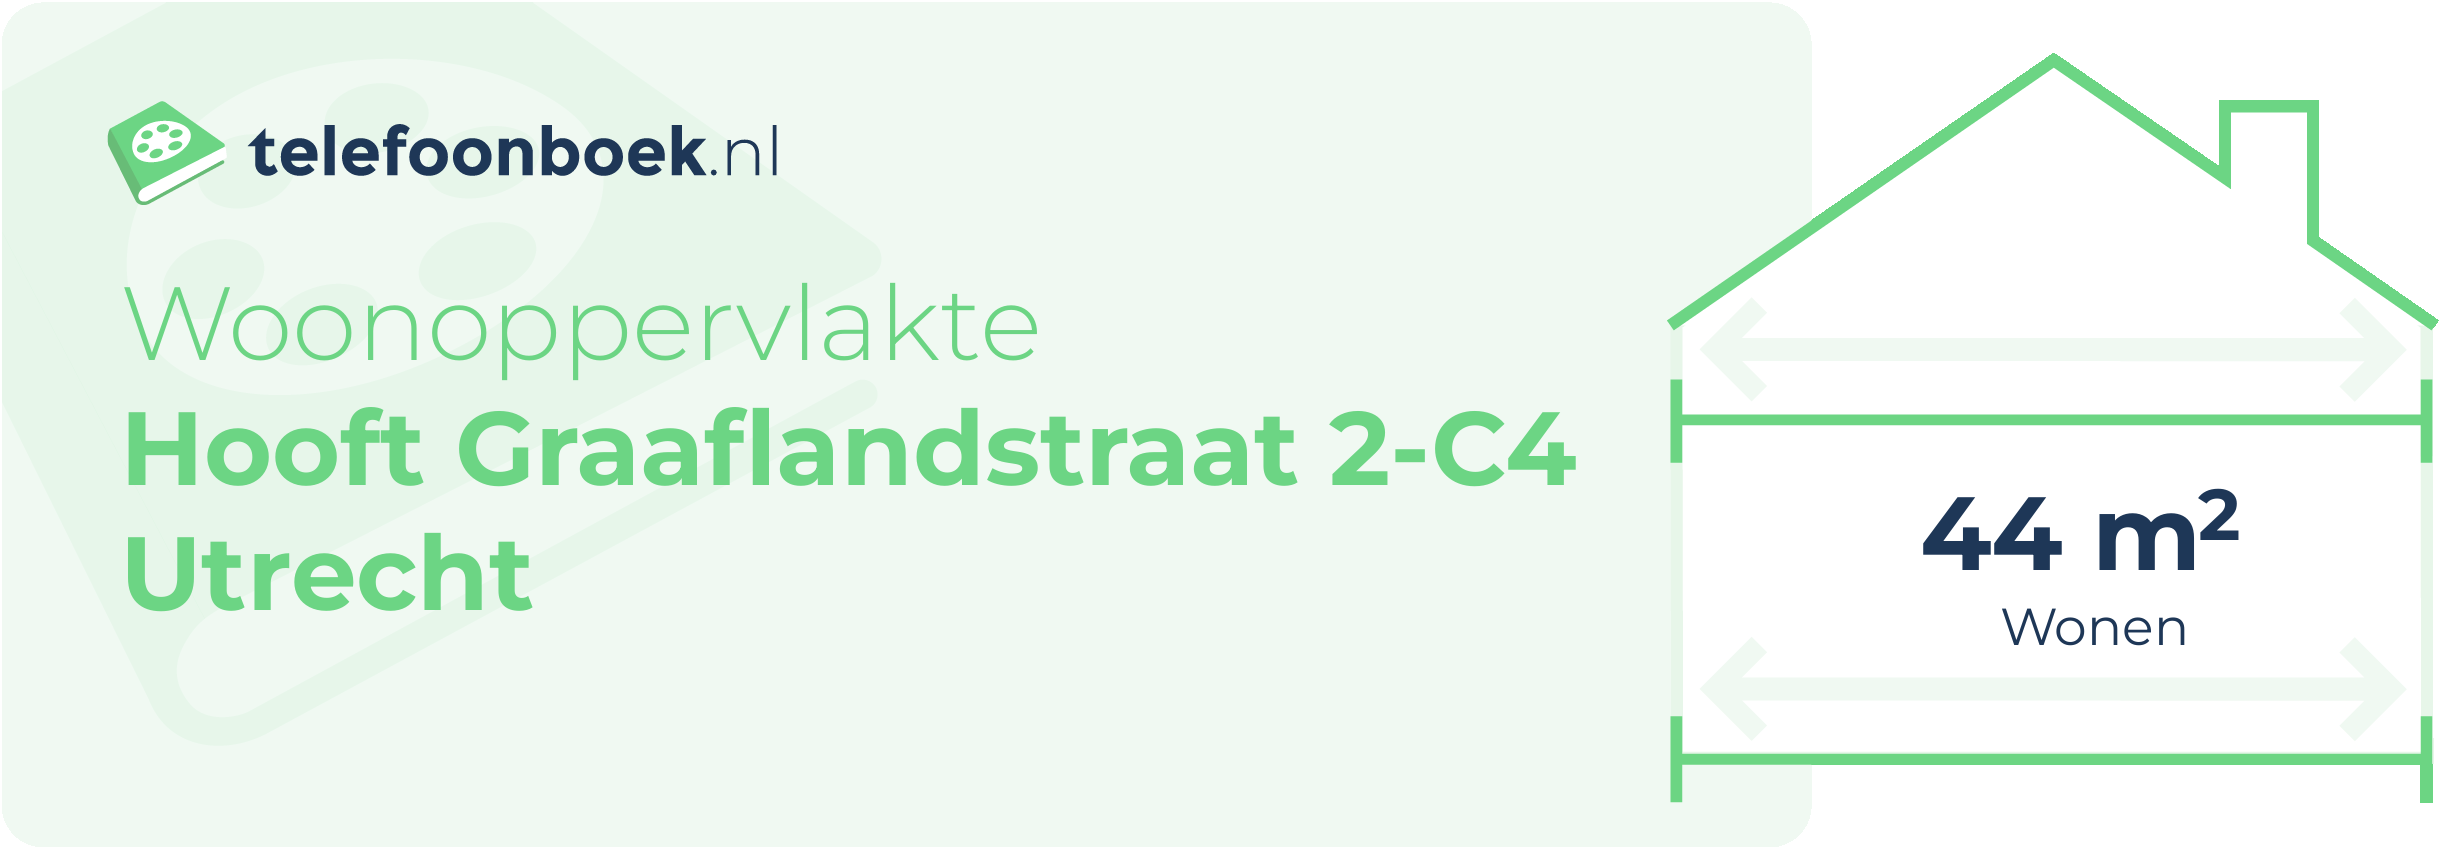 Woonoppervlakte Hooft Graaflandstraat 2-C4 Utrecht